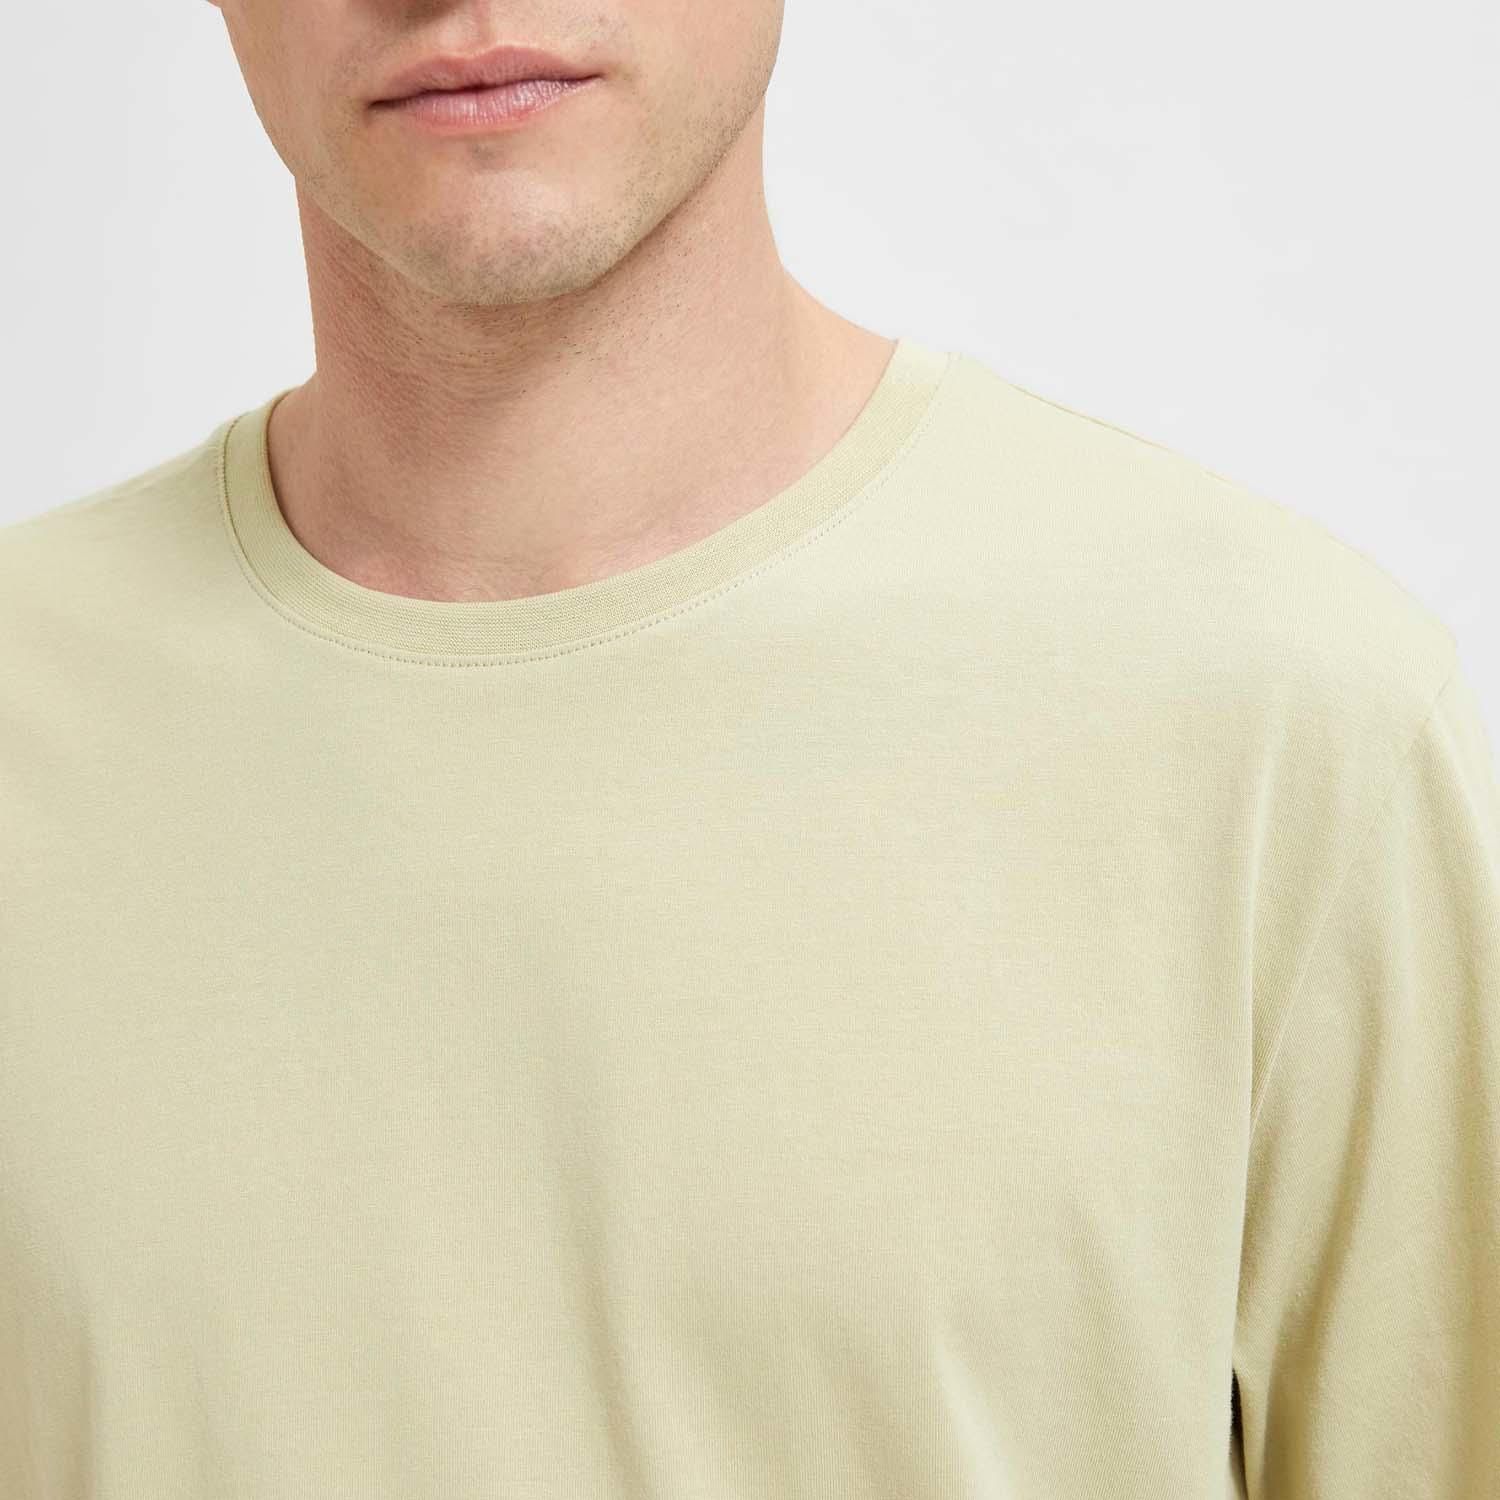 Selected Homme T-shirt Groen 